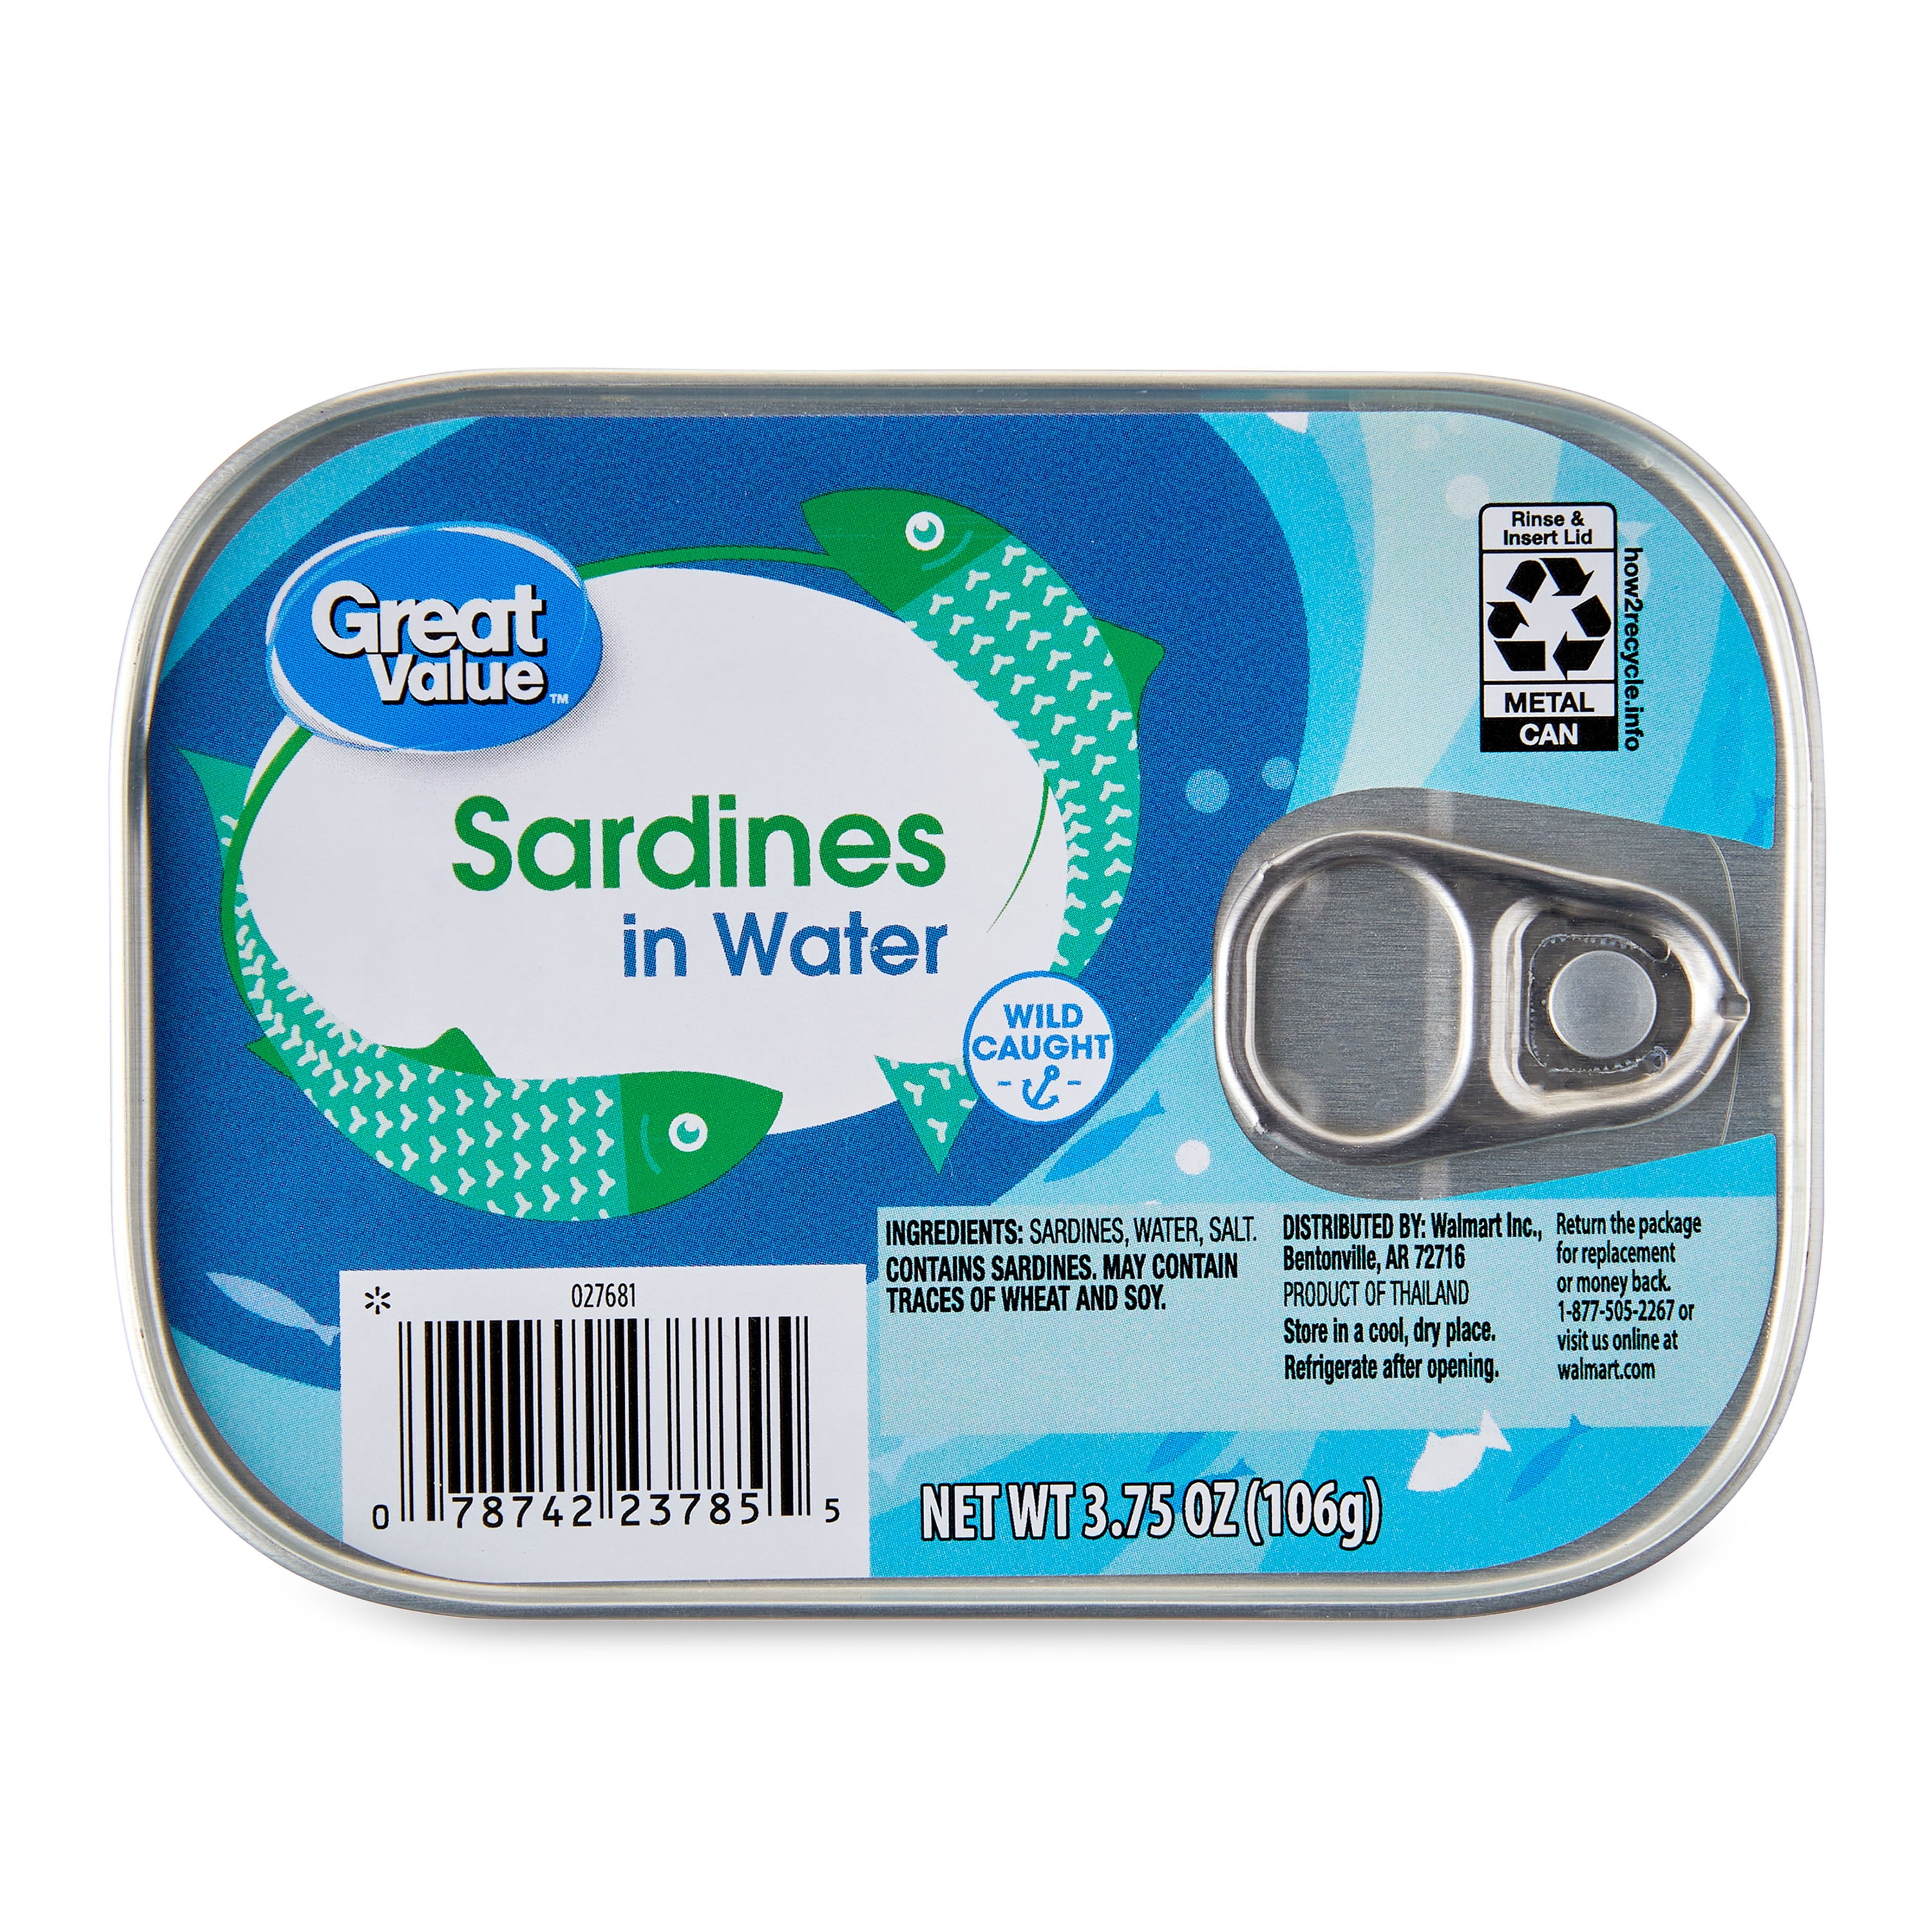 Wild Sardines in Water - 2 oz tins